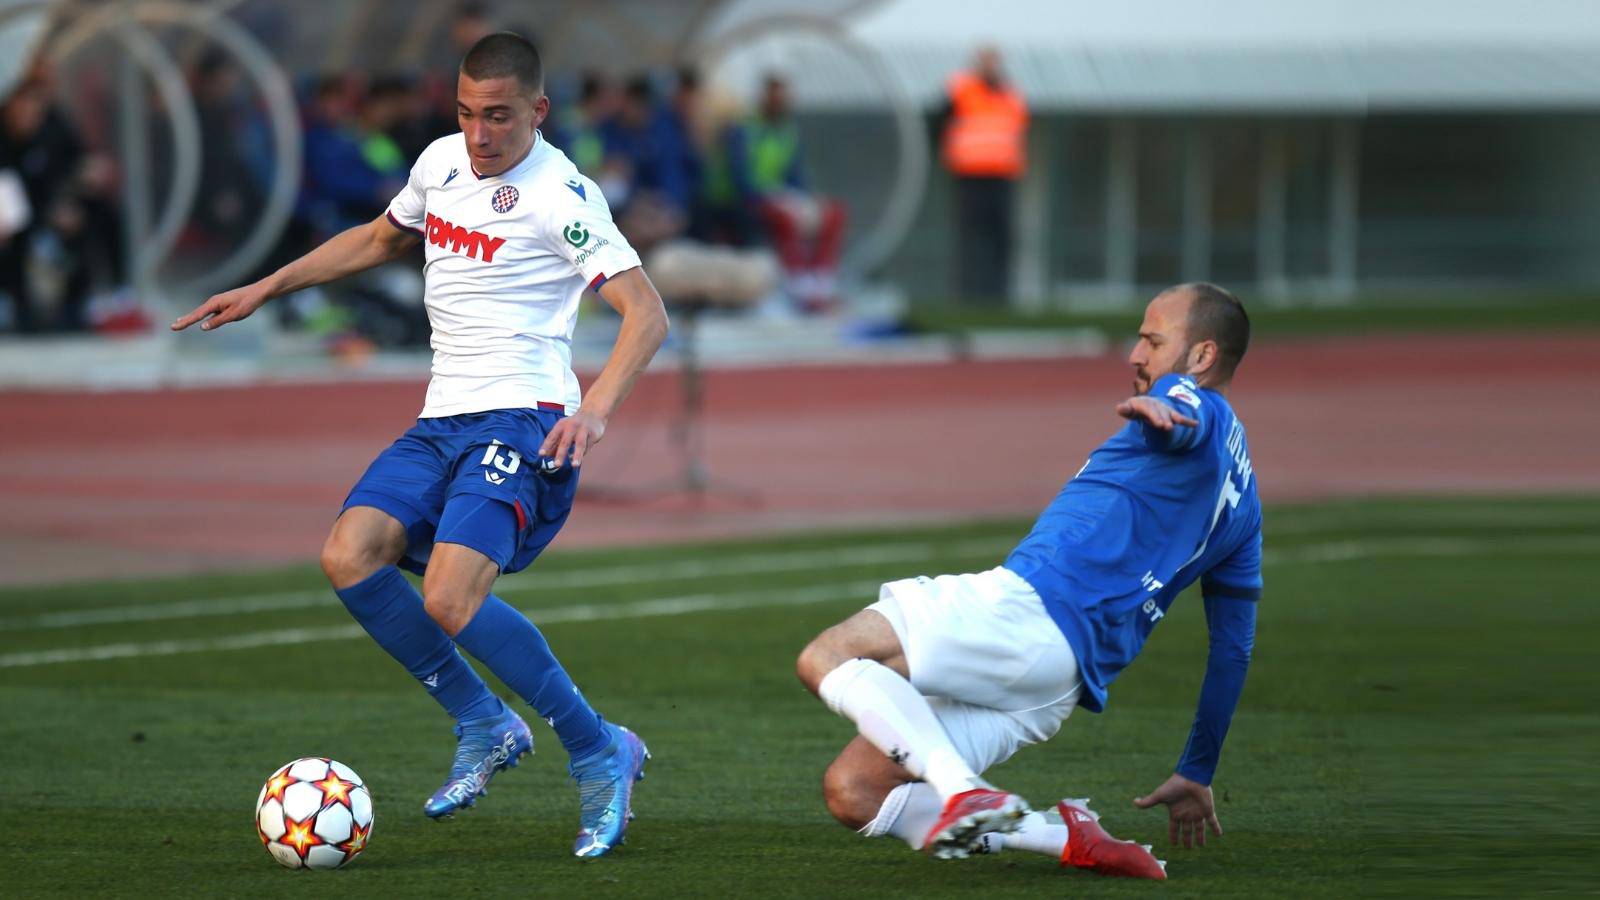 Napustio je Poljud i došao na Maksimir: Hvala Hajduku, ali Dinamo će uzeti naslov prvaka